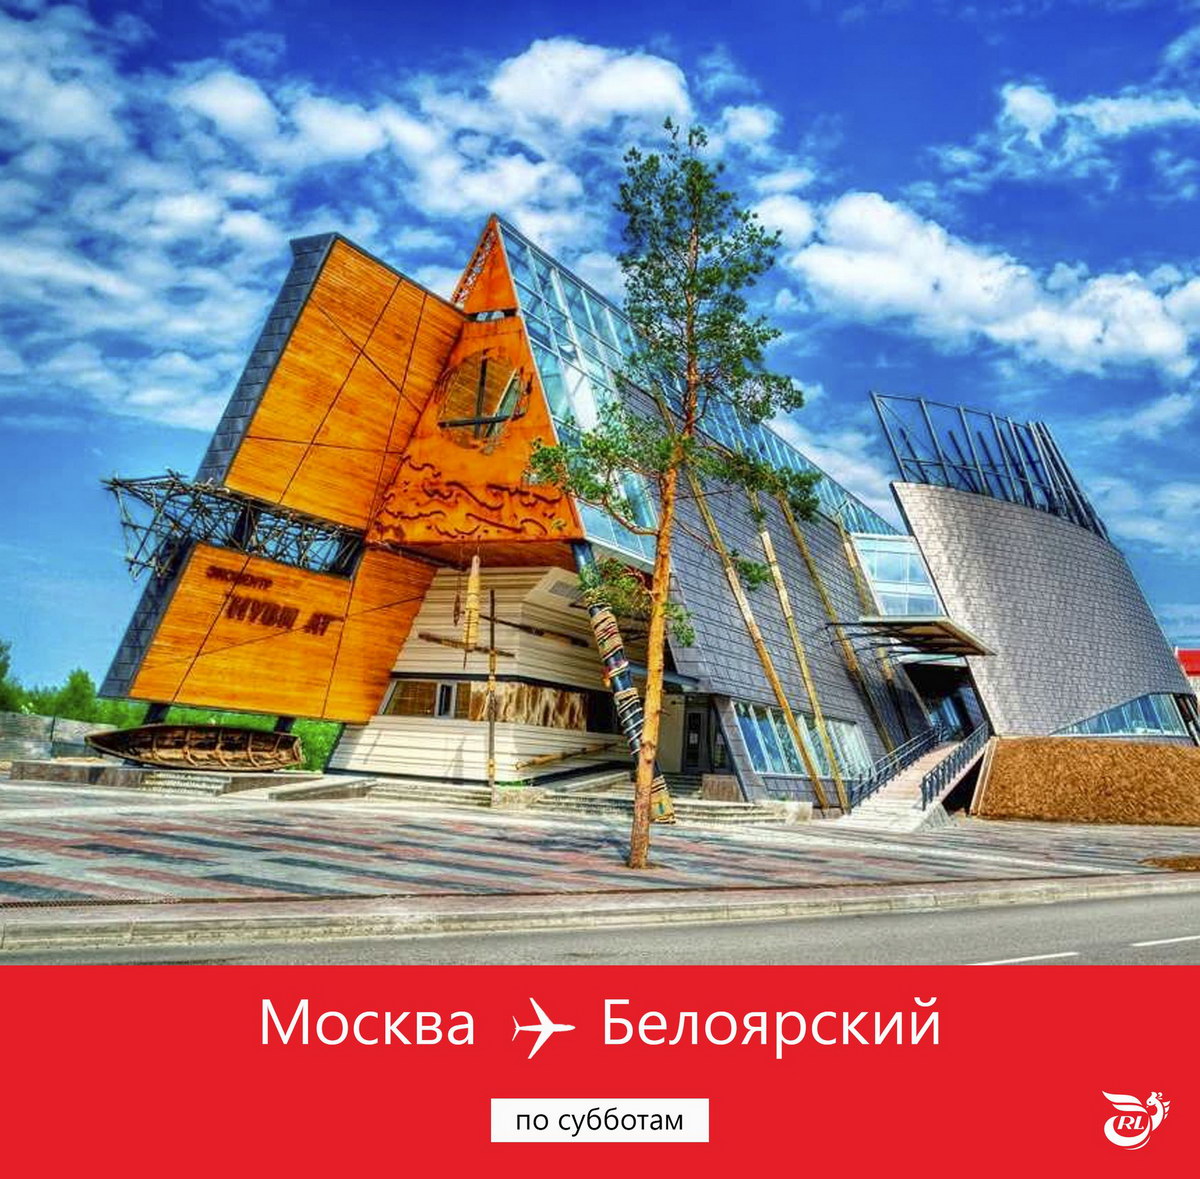 Город Белоярский Ханты-Мансийский автономный округ